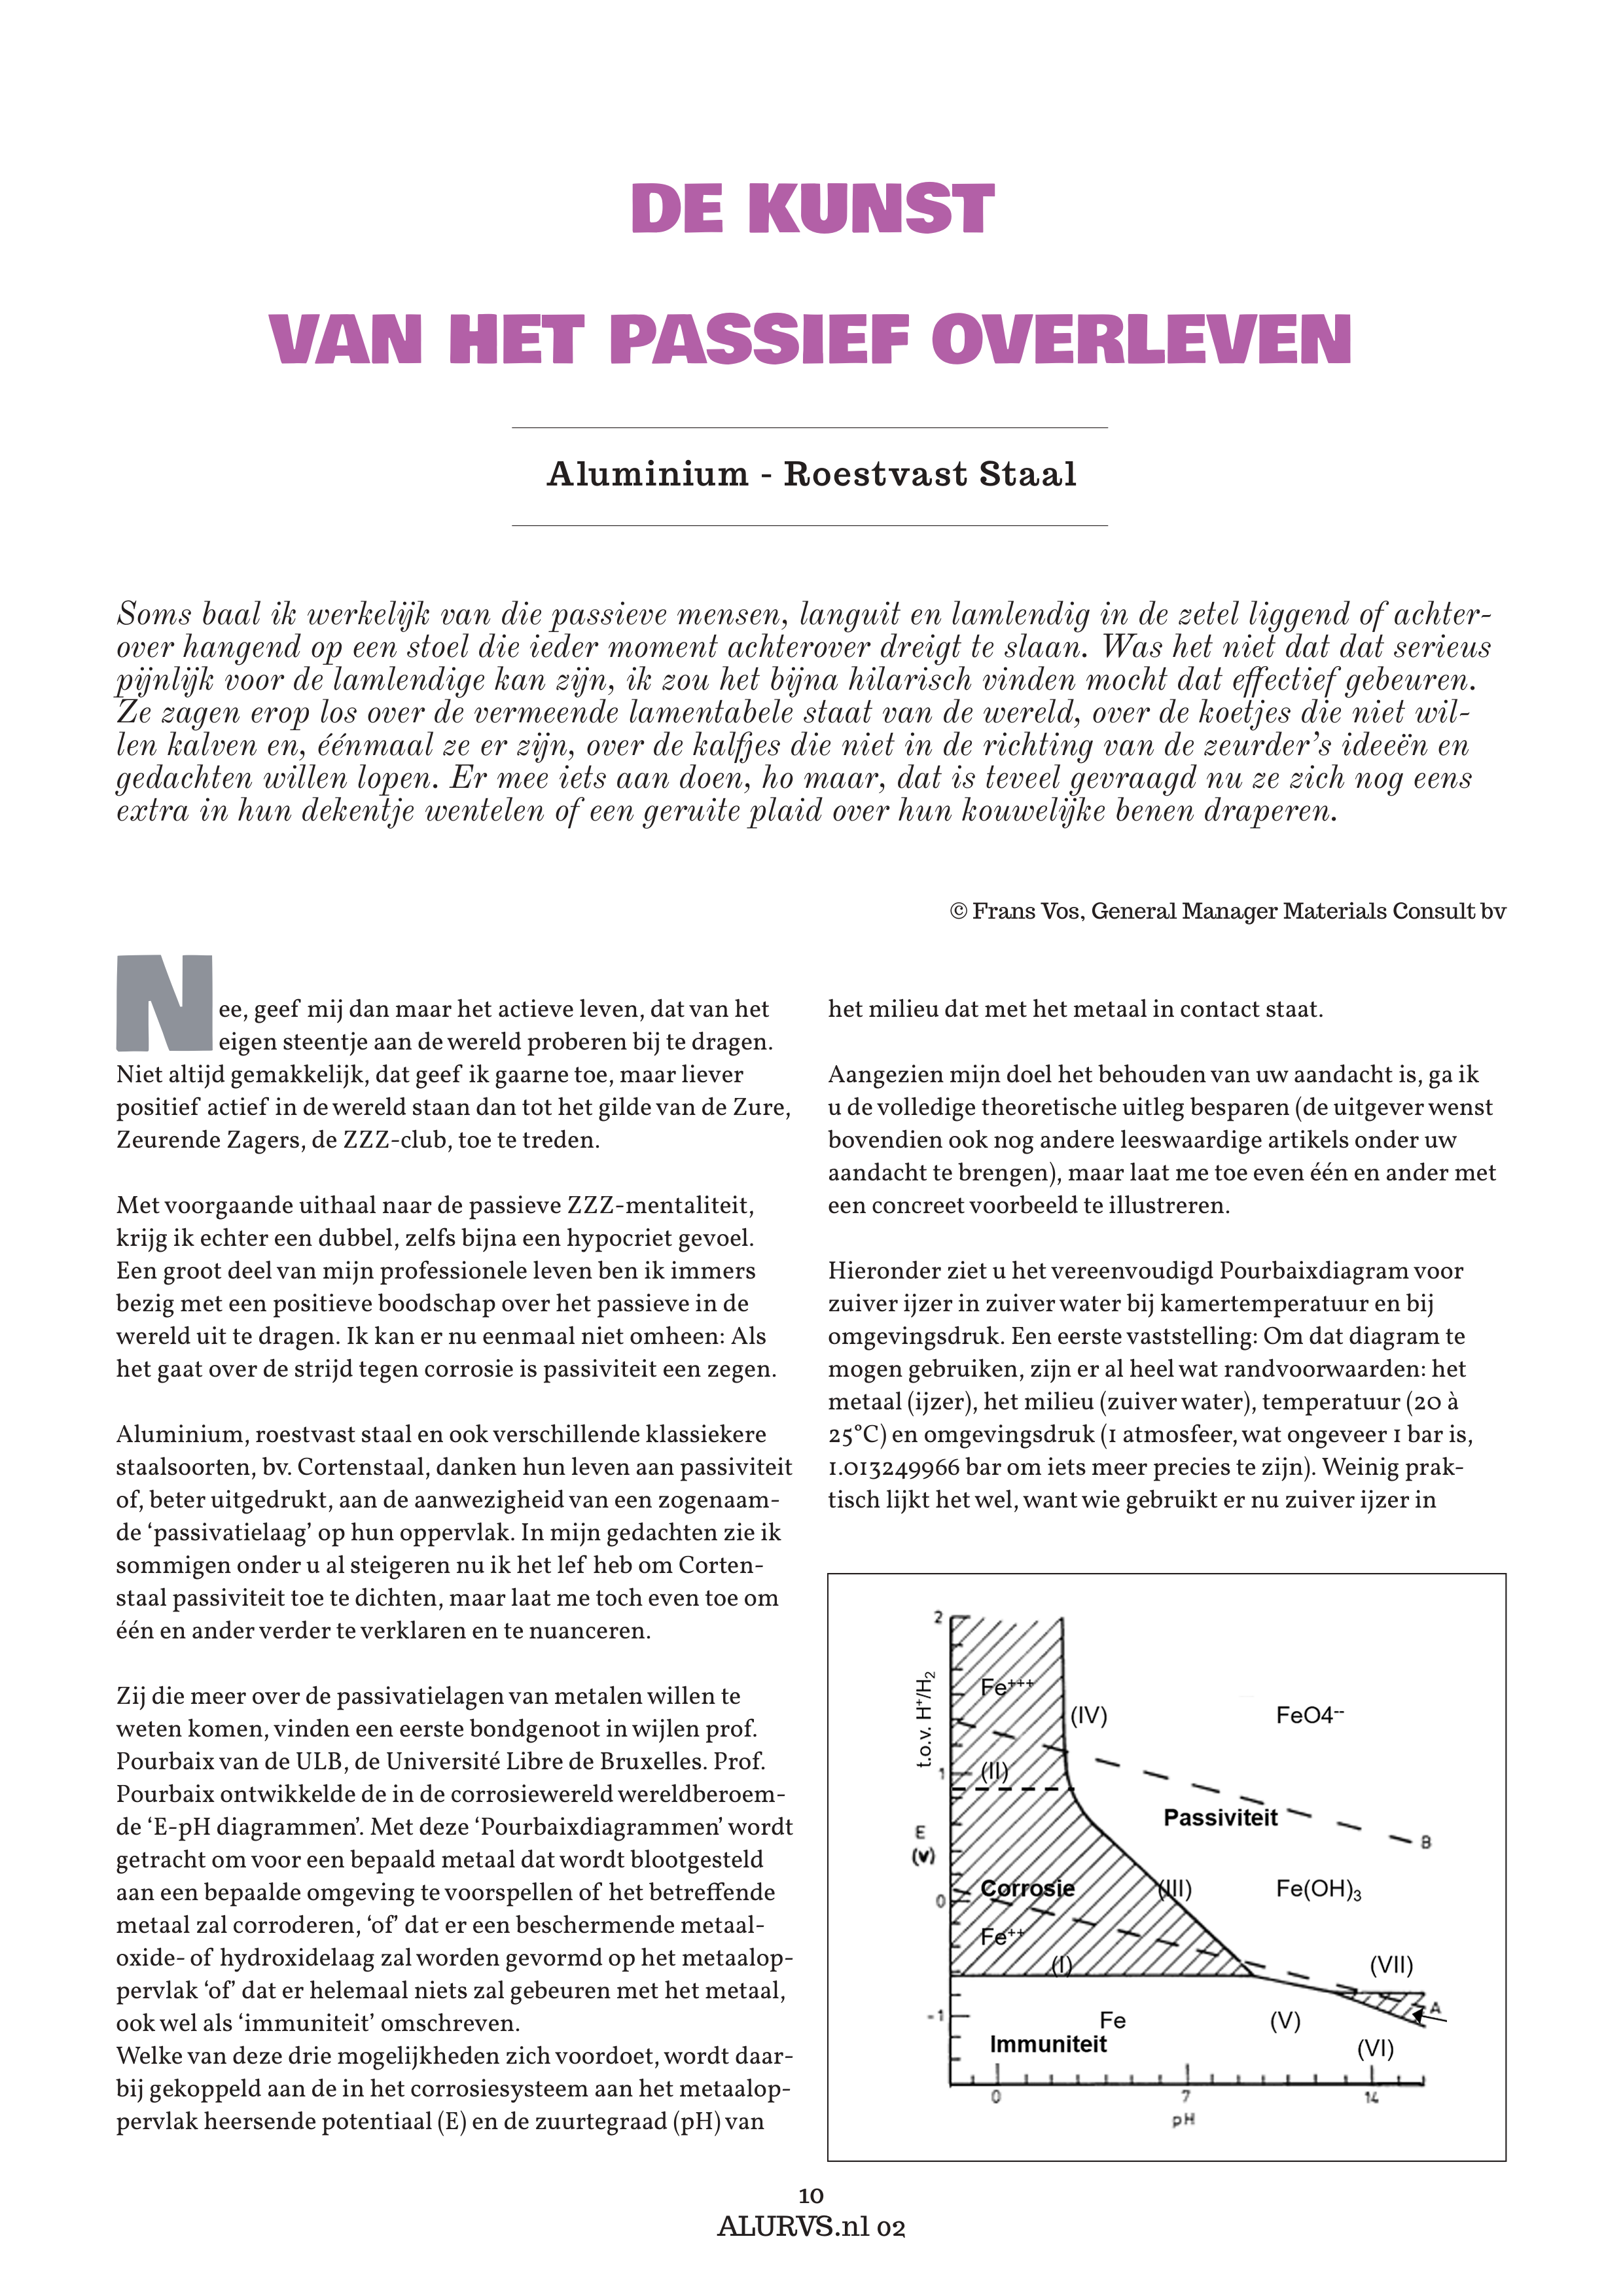 De kunst van het passief overleven, ALURVS.nl, 02-2021